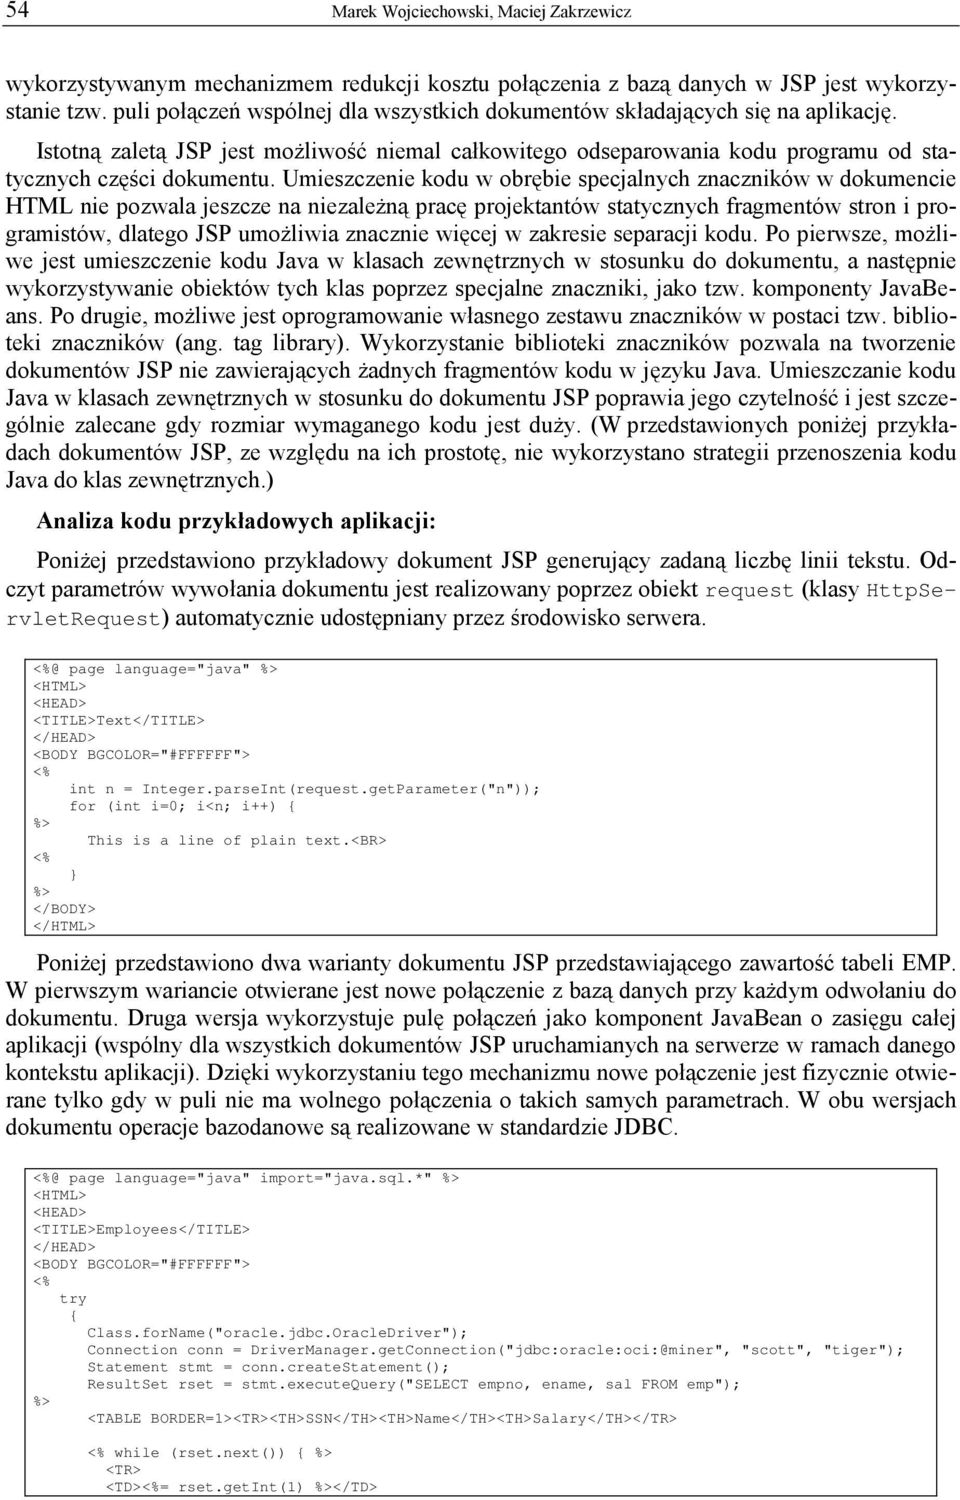 Umieszczenie kodu w obrębie specjalnych znaczników w dokumencie HTML nie pozwala jeszcze na niezależną pracę projektantów statycznych fragmentów stron i programistów, dlatego JSP umożliwia znacznie